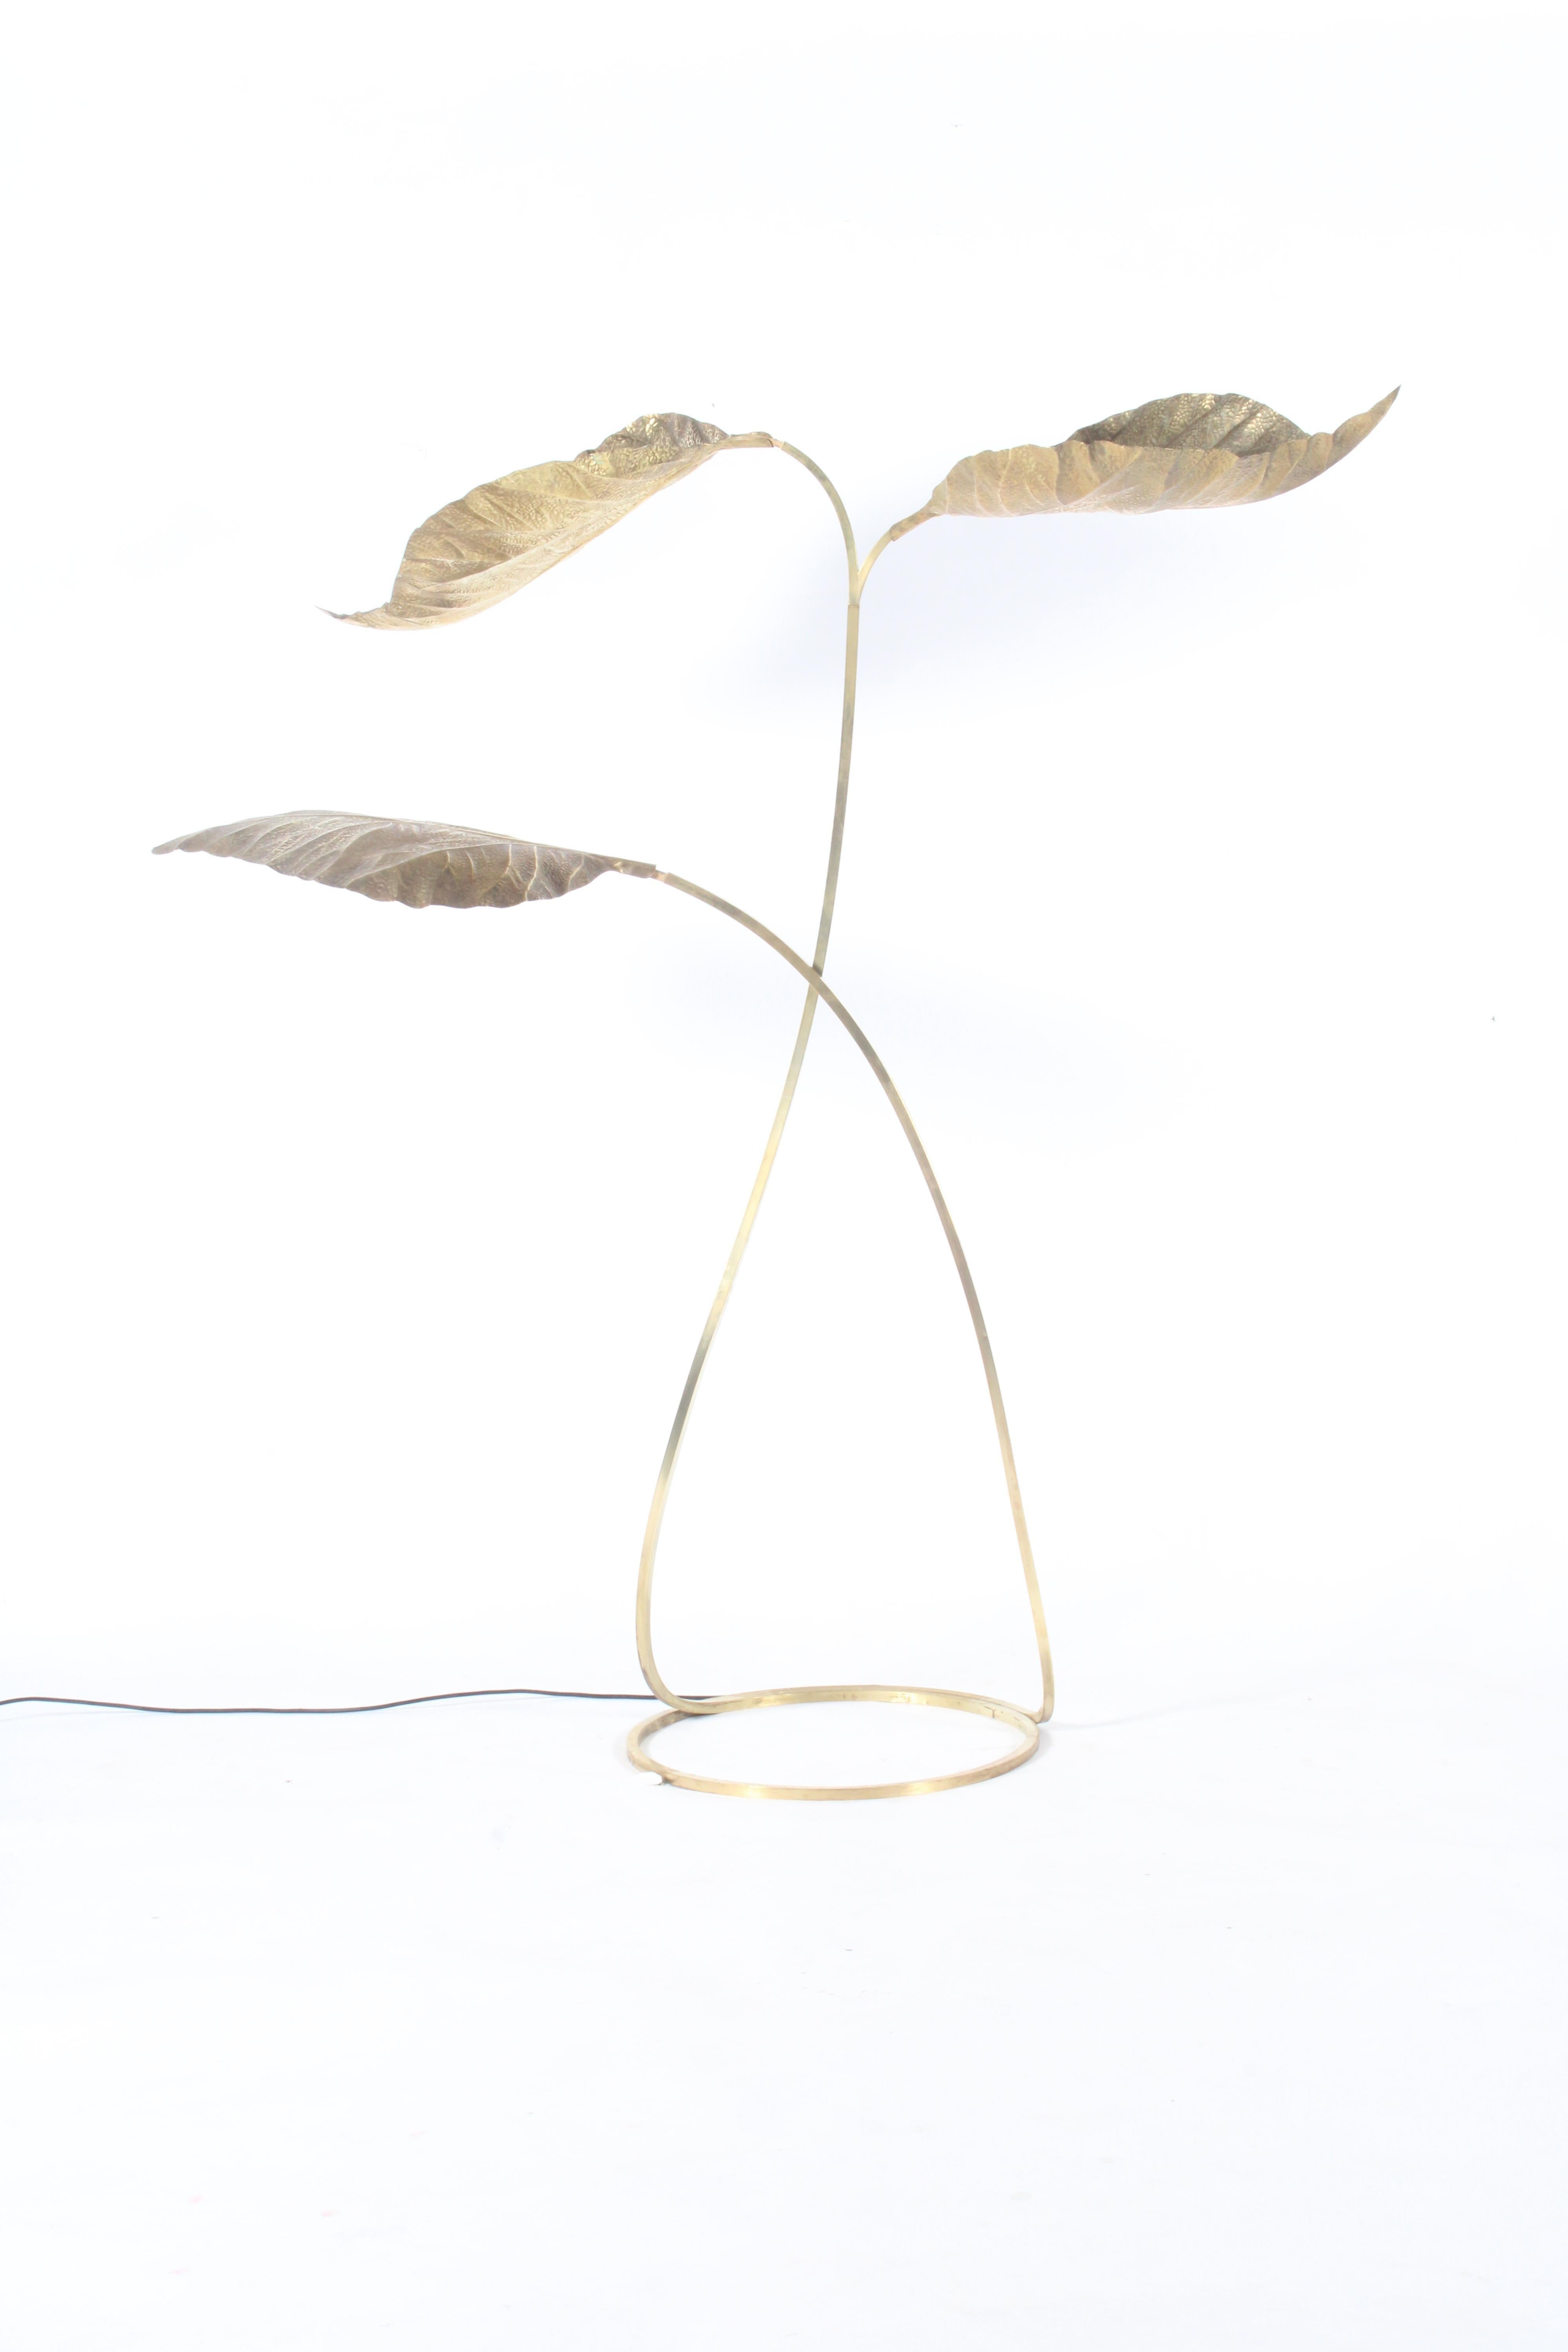 Ce remarquable lampadaire a été créé par le designer sculpteur Carlo Giorgi pour l'Atelier Bottega Gadda à Milan vers 1970. Bien que sa fonction première soit celle d'un lampadaire et qu'il diffuse la plus belle lumière ambiante, il peut également